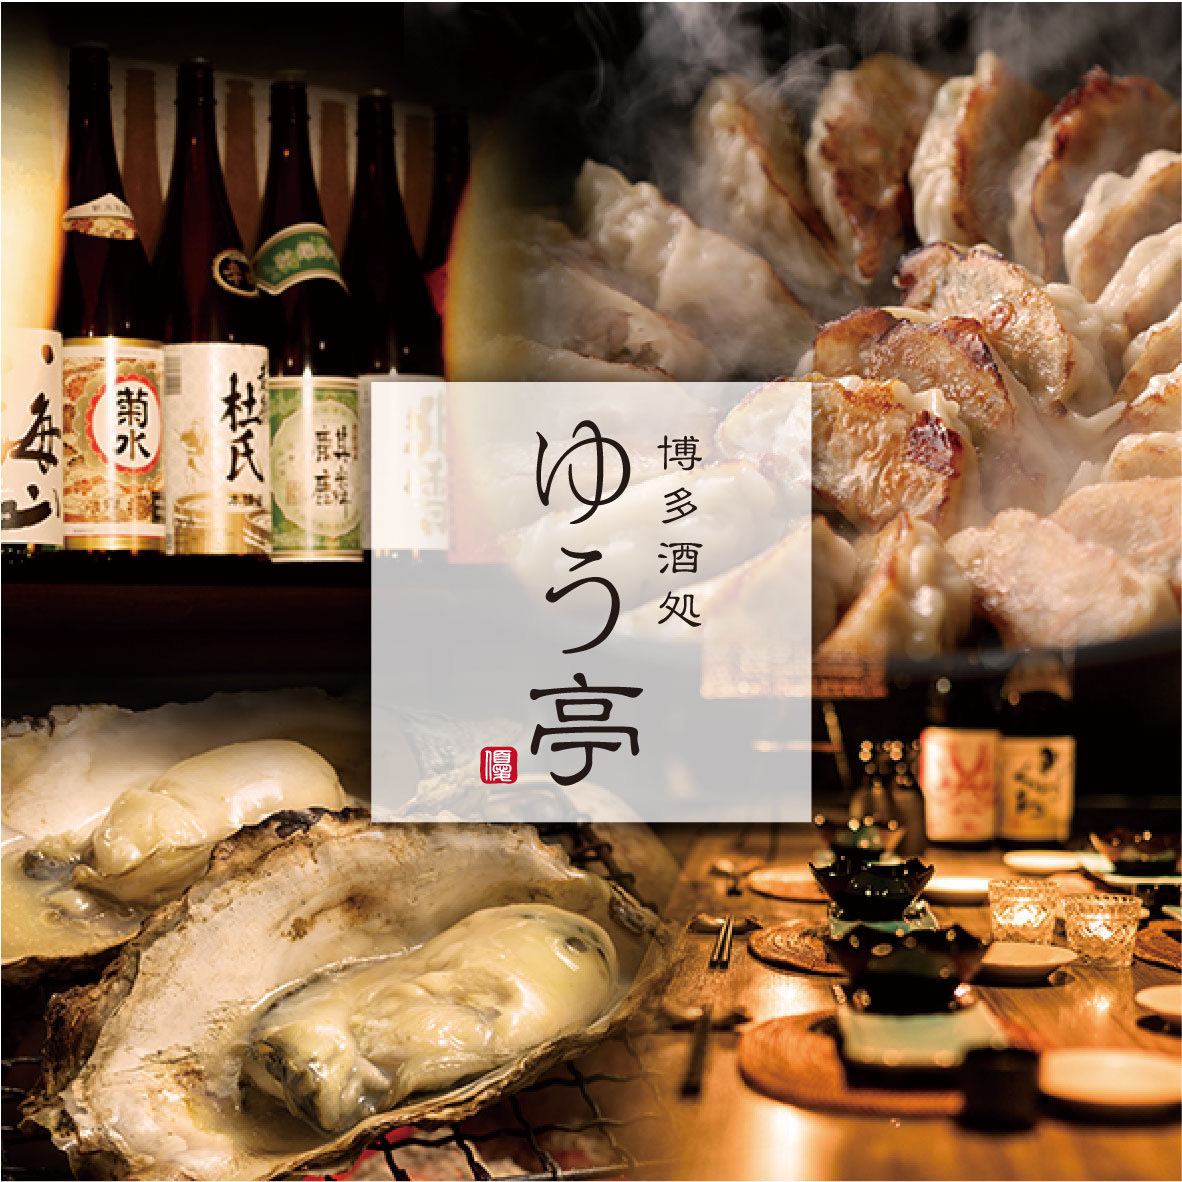 您可以在融合了日式和西式風格的時尚私人居酒屋享用菜餚。